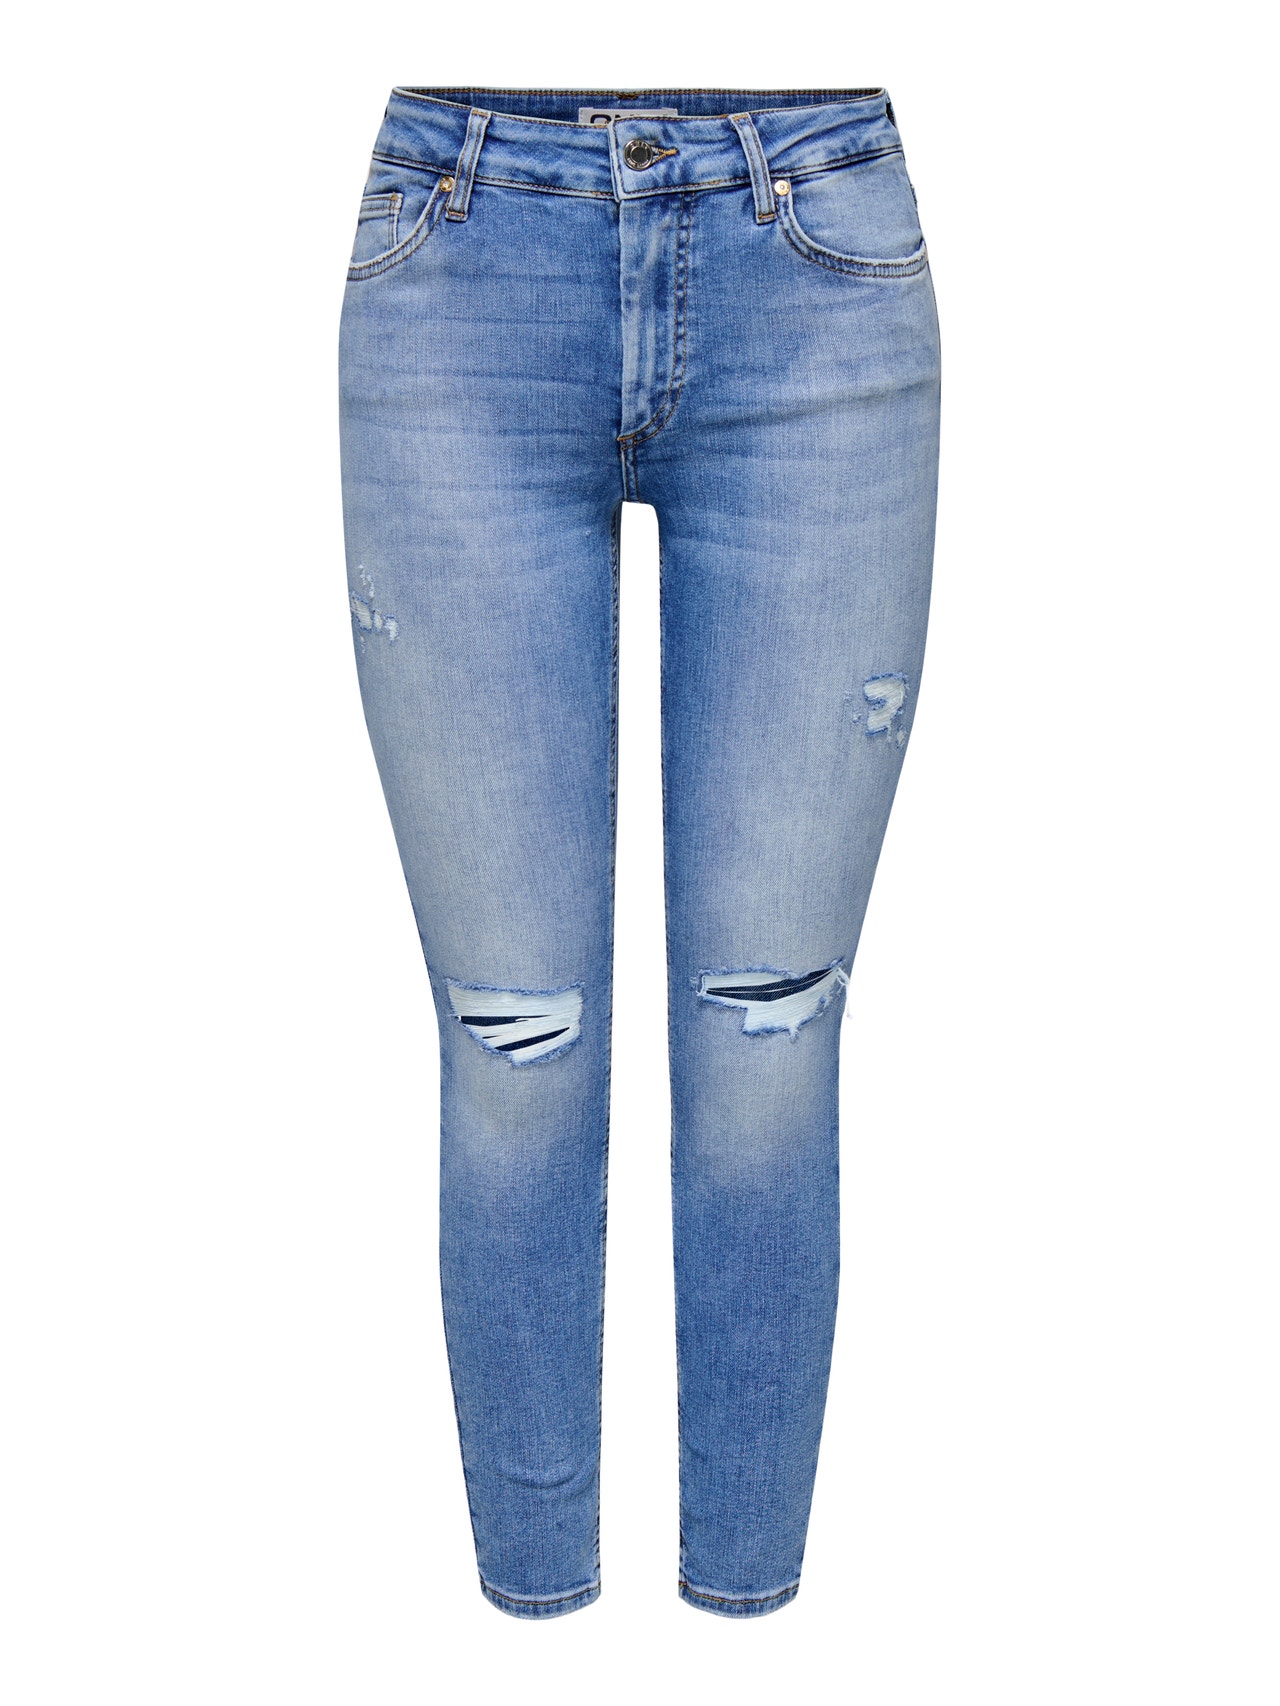 ONLY Skinny Fit Middels høy midje Jeans -Medium Blue Denim - 15340519